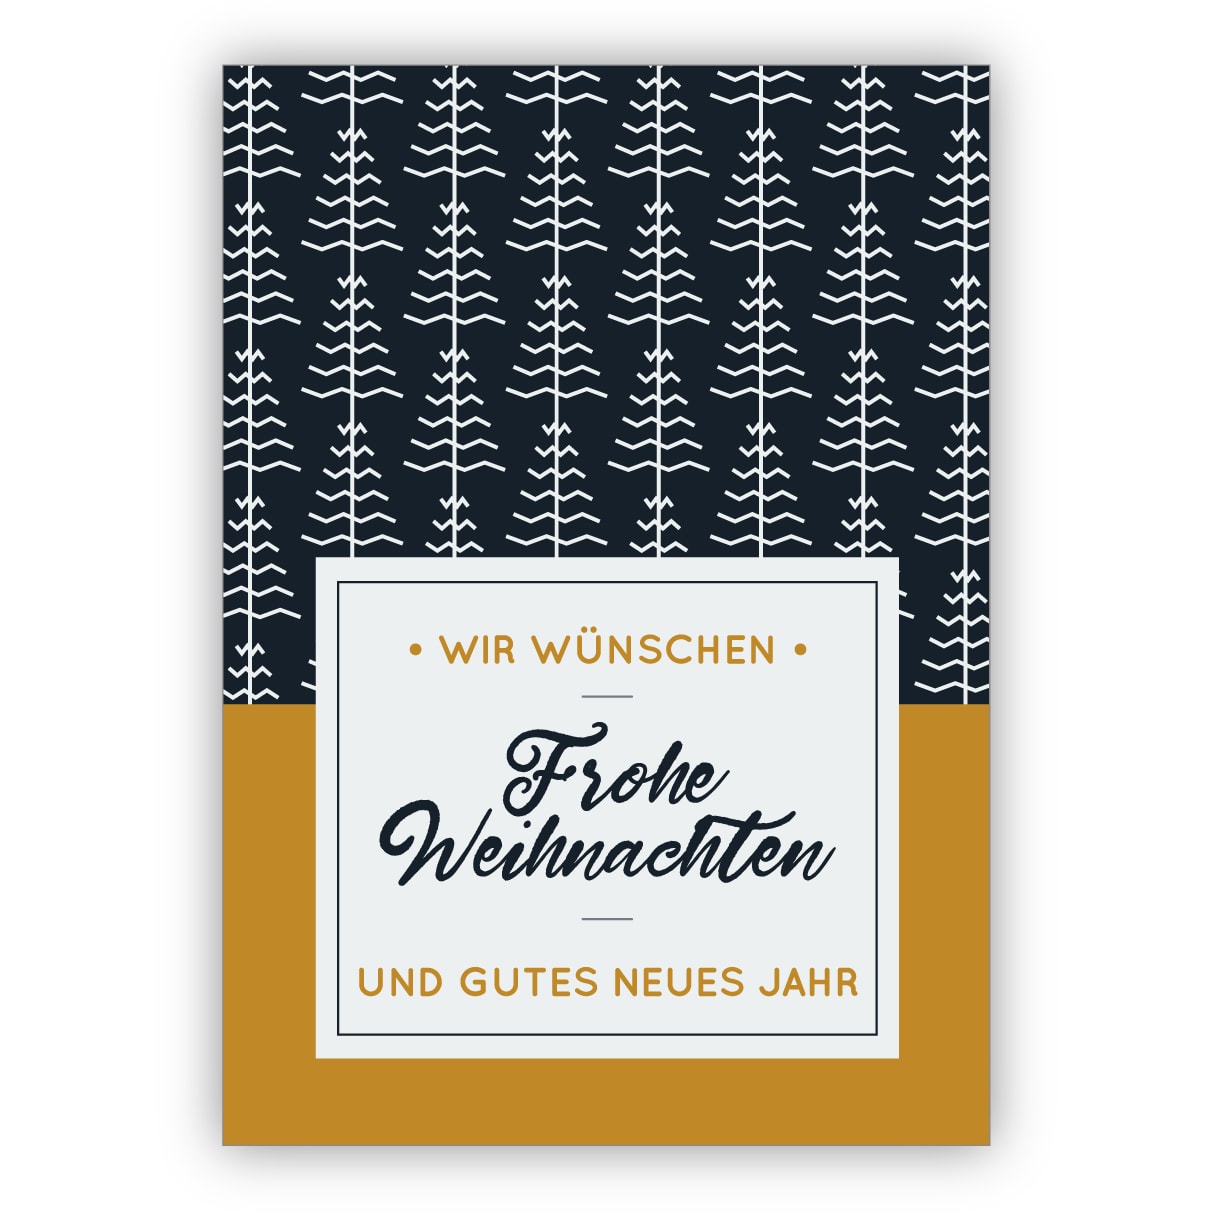 Edle blau weiße Weihnachtskarte mit Weihnachtsbaum Muster: Wir wünschen frohe Weihnachten